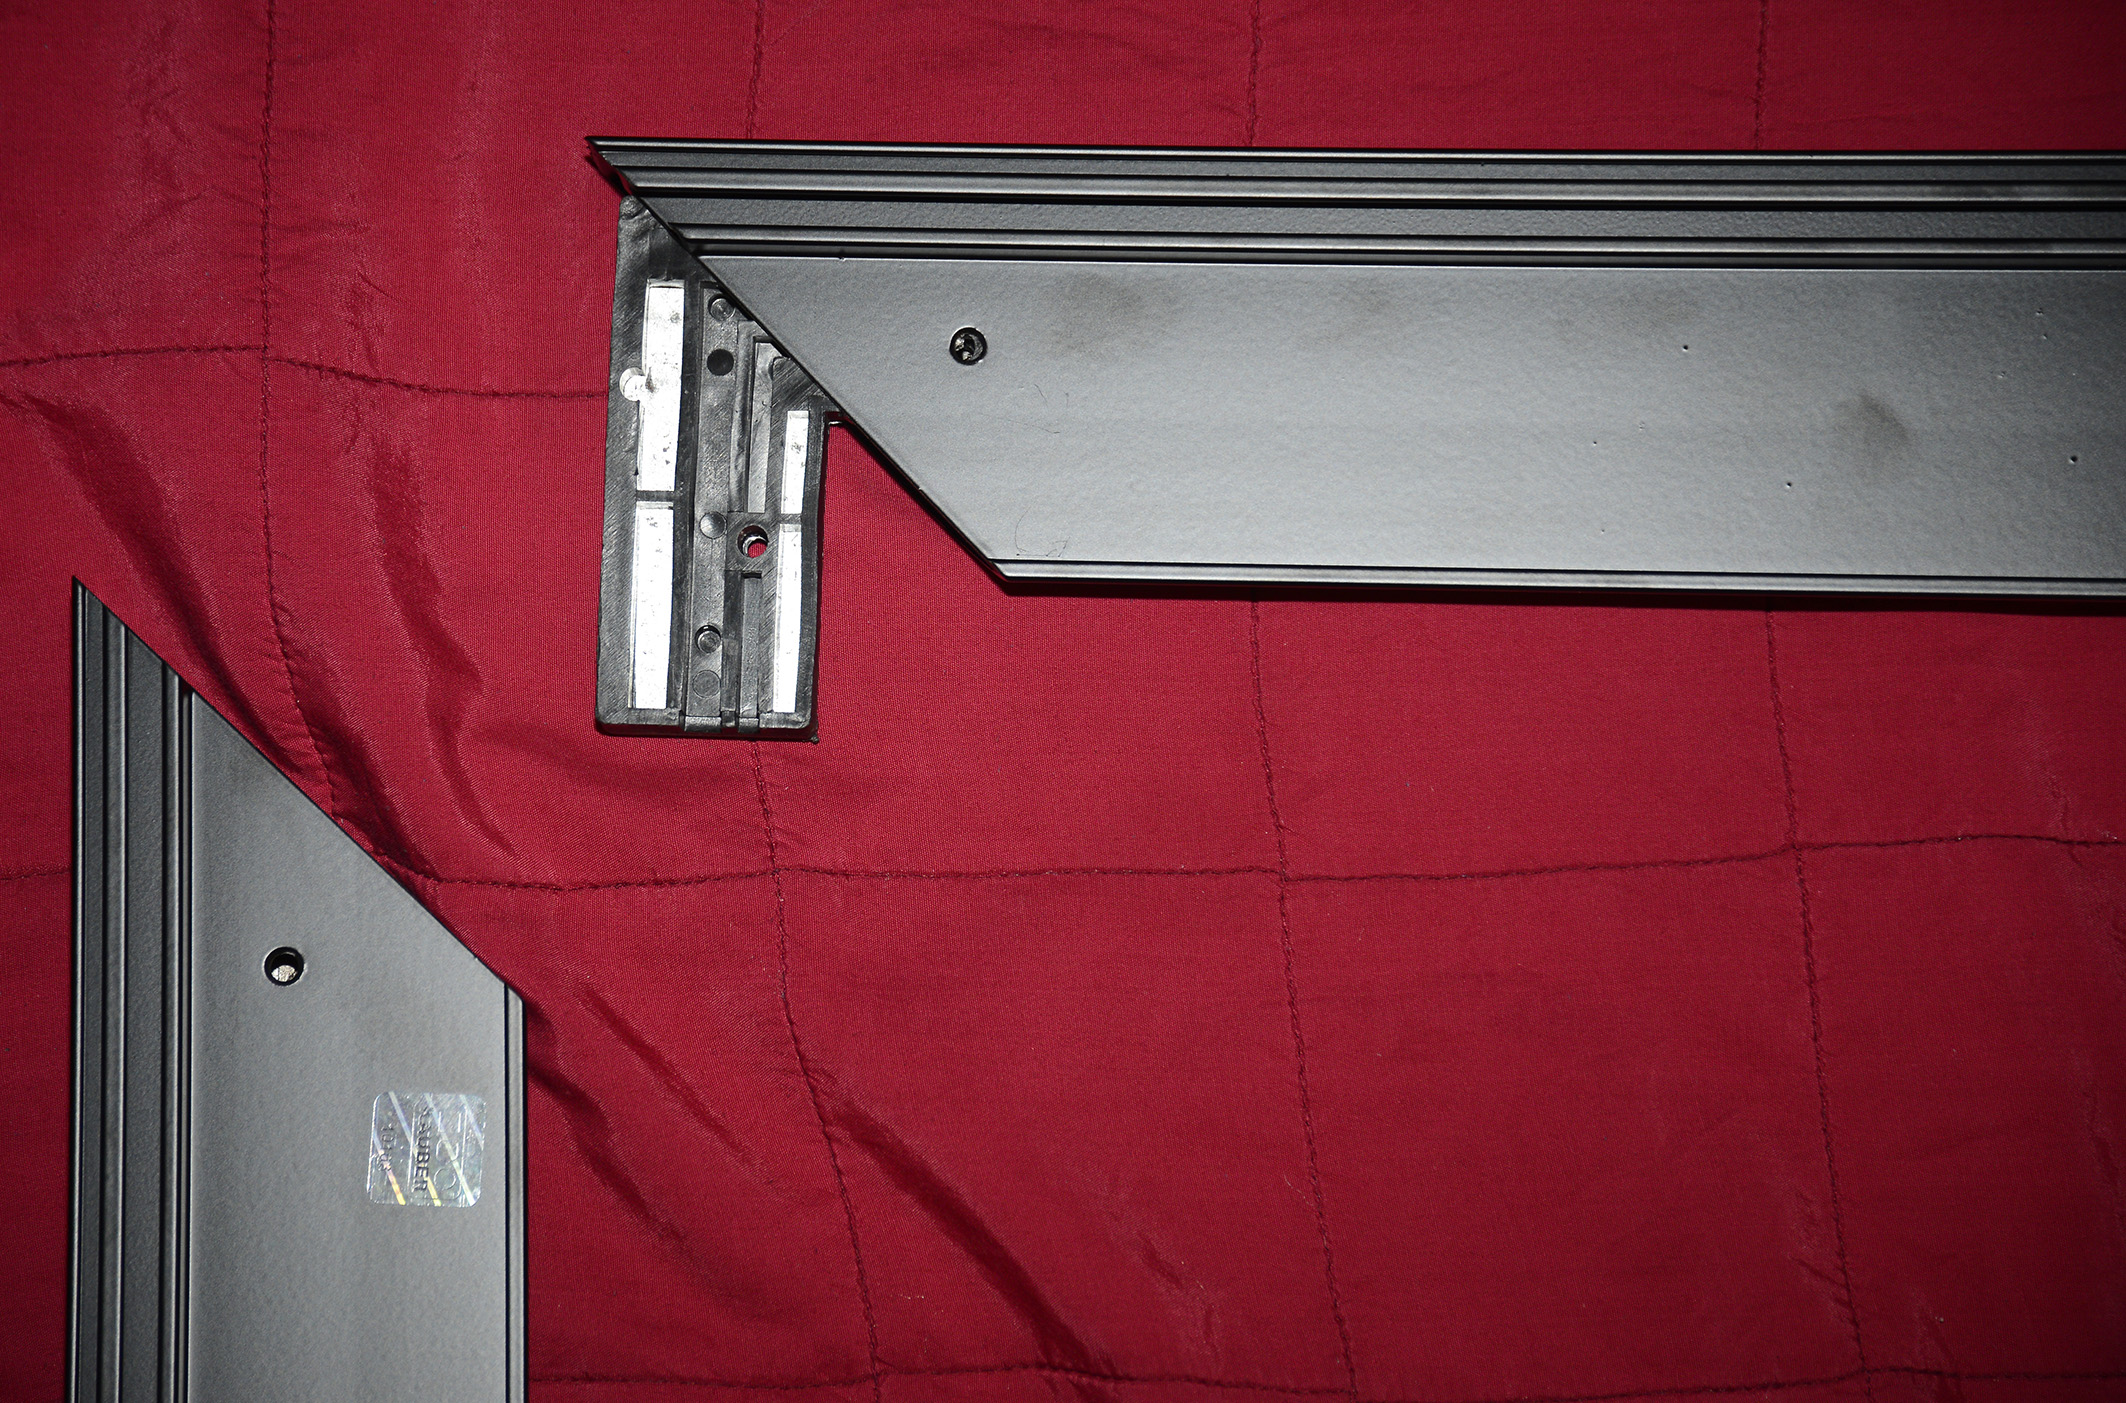 Foto: Michael B. Rehders Zunächst breite ich die vier Aluminium-Profile auf einer Decke aus, damit diese nicht unnötigerweise zerkratzen beim Zusammenbau. Vier Winkel werden in die Kanten eingeschoben und der Rahmen dann zusammengesteckt. Sehr einfach!